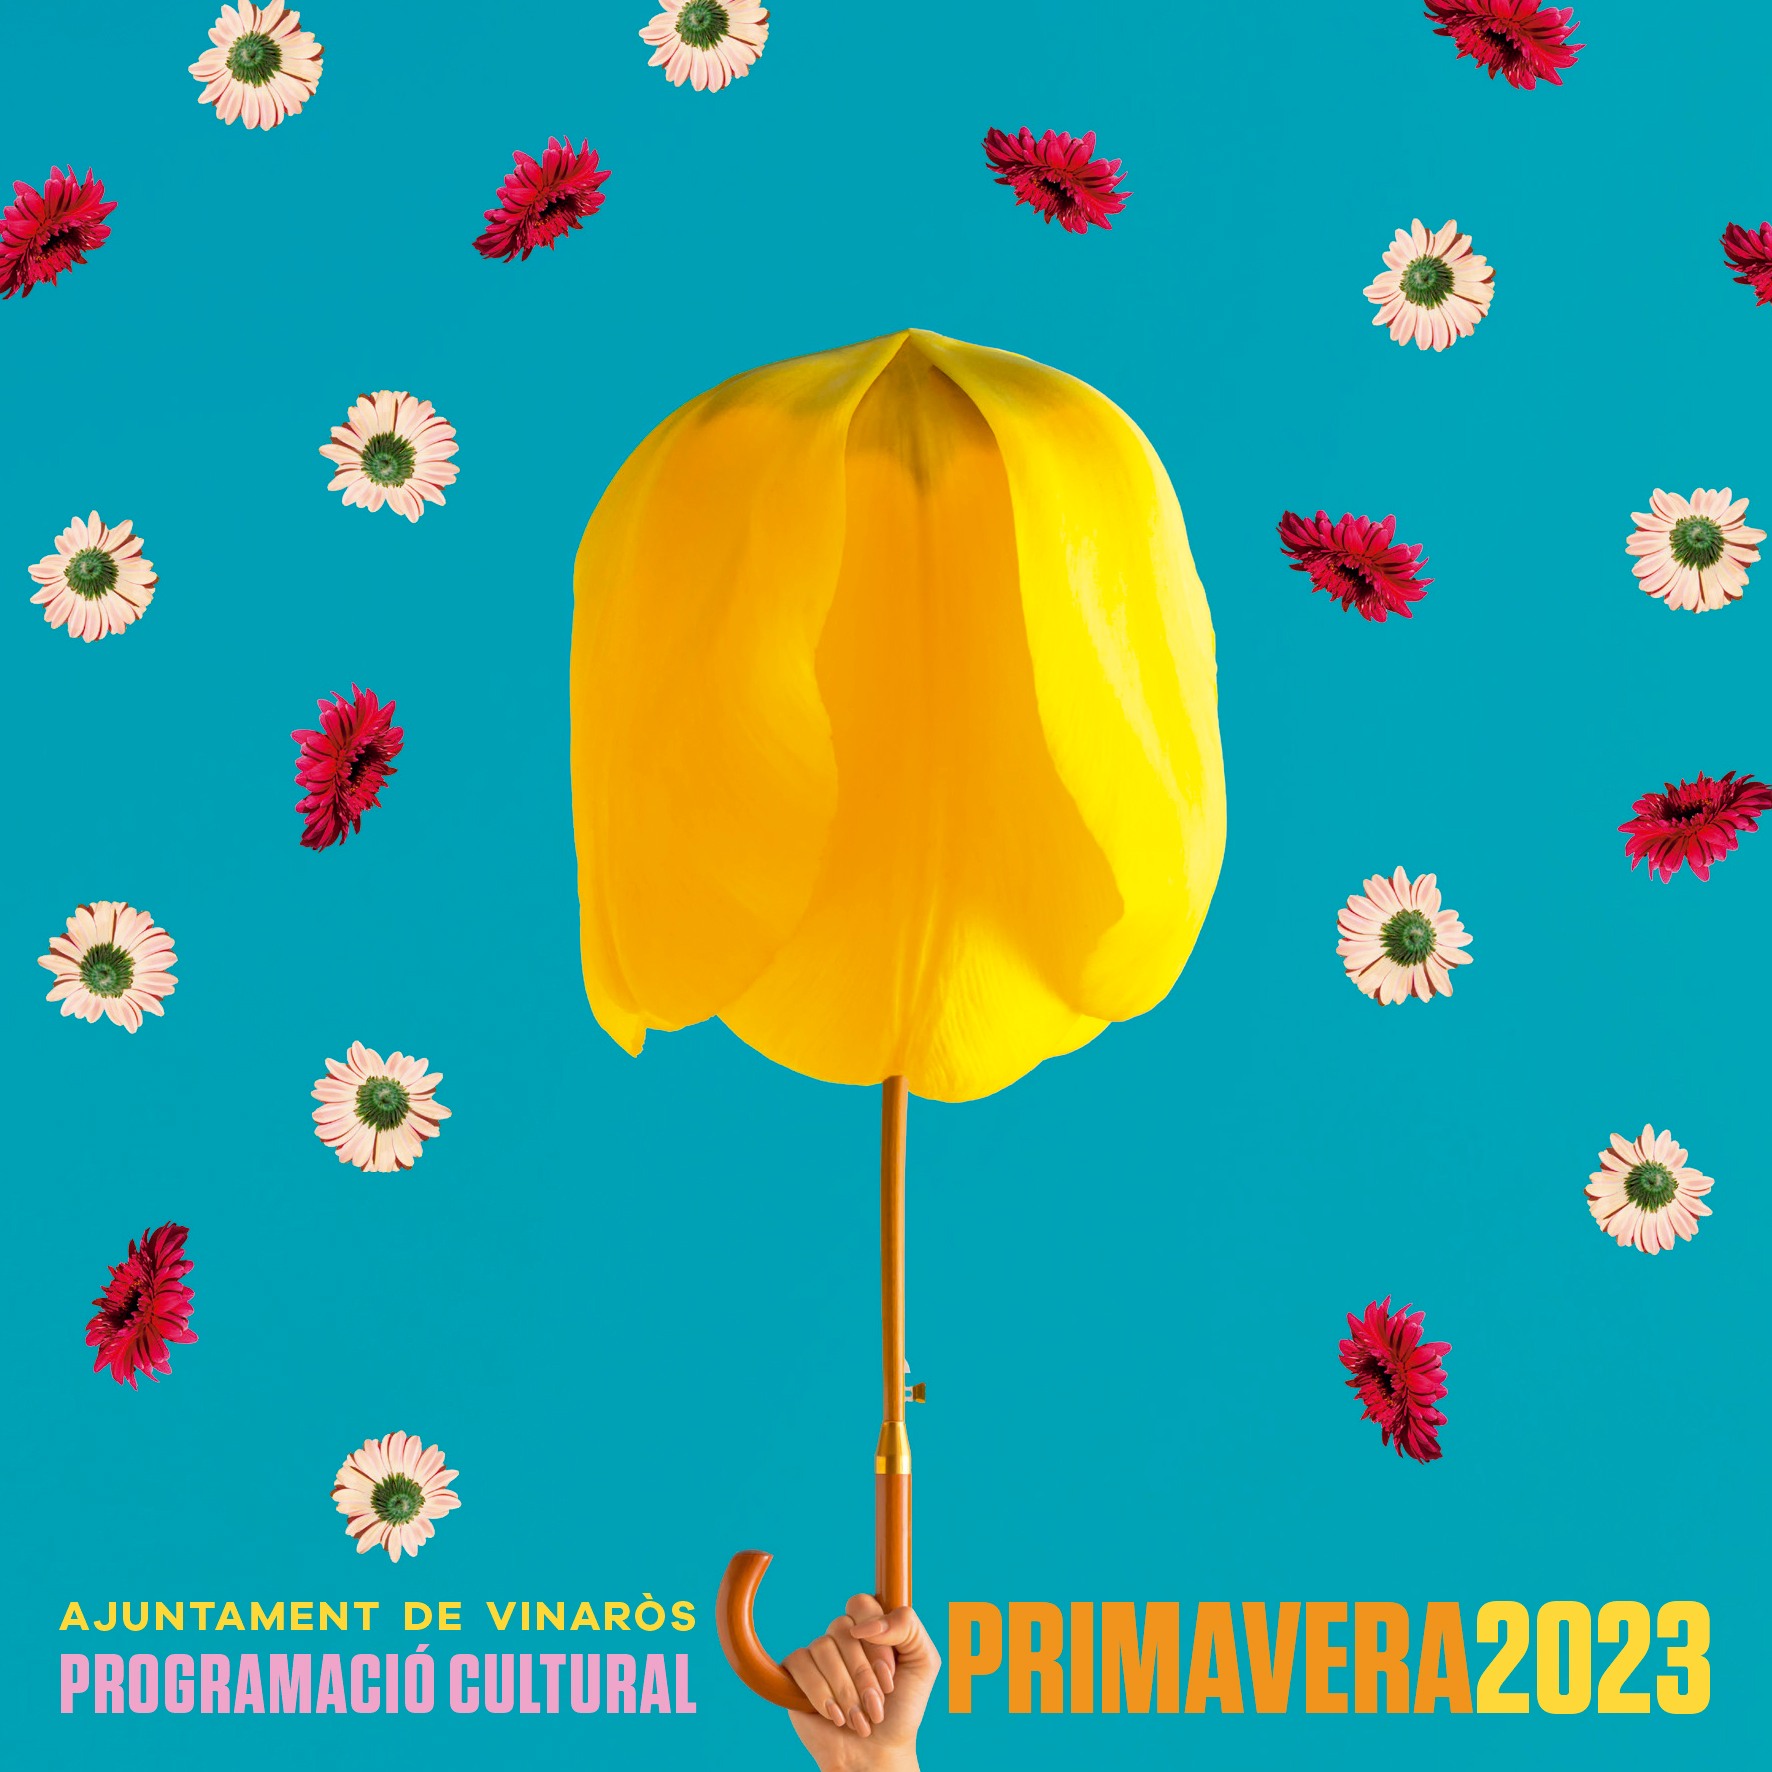 Programación cultural de Vinaròs - primavera 2023